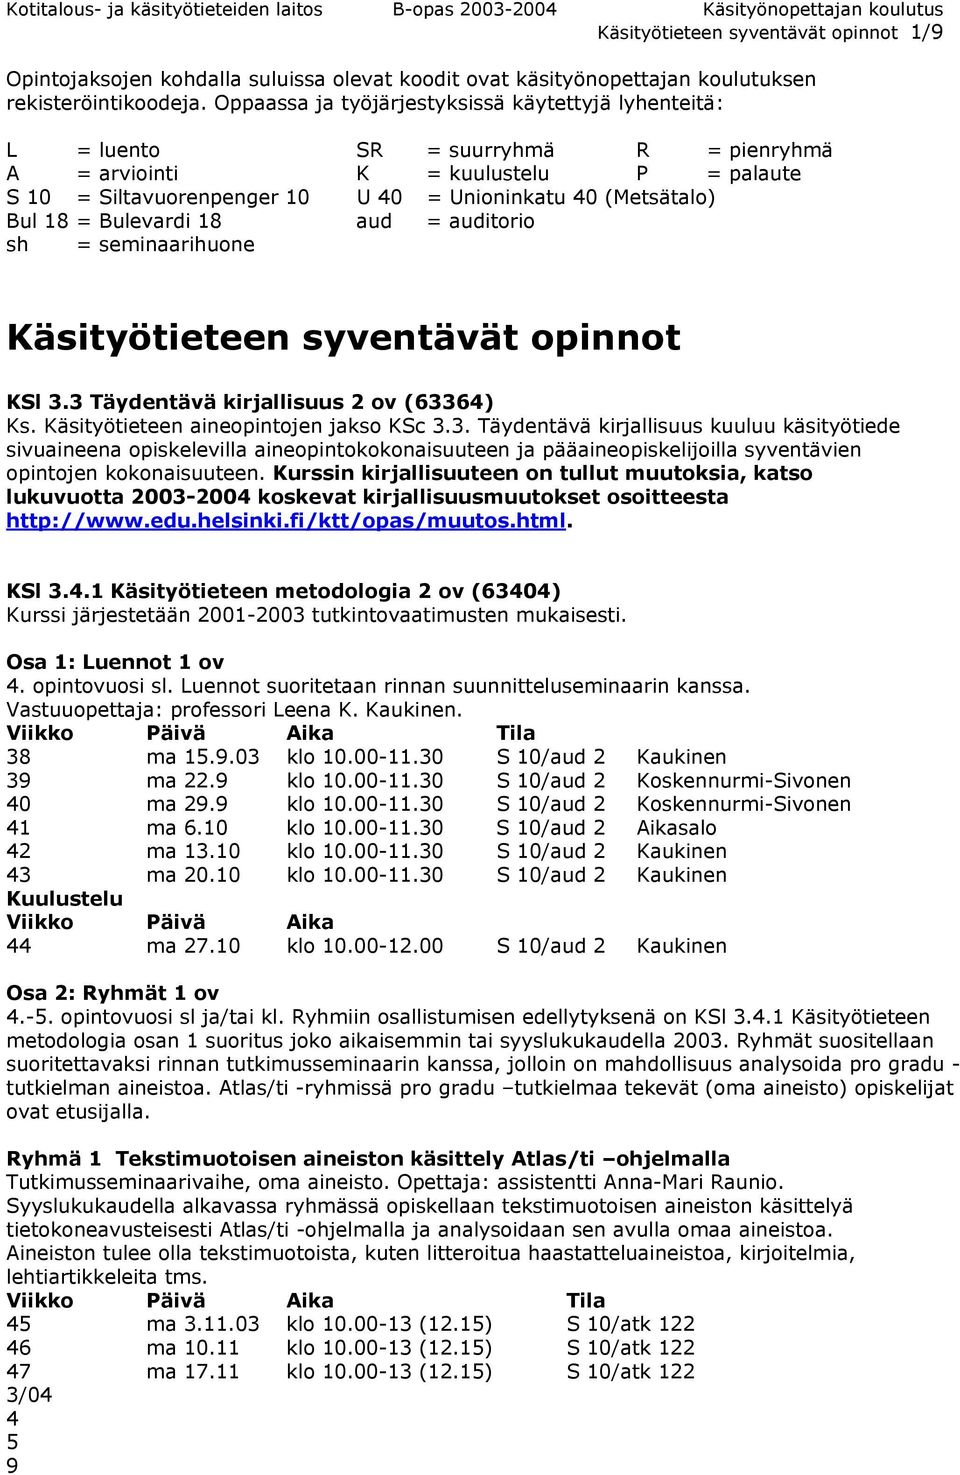 18 = Bulevardi 18 aud = auditorio sh = seminaarihuone Käsityötieteen syventävät opinnot KSl 3.